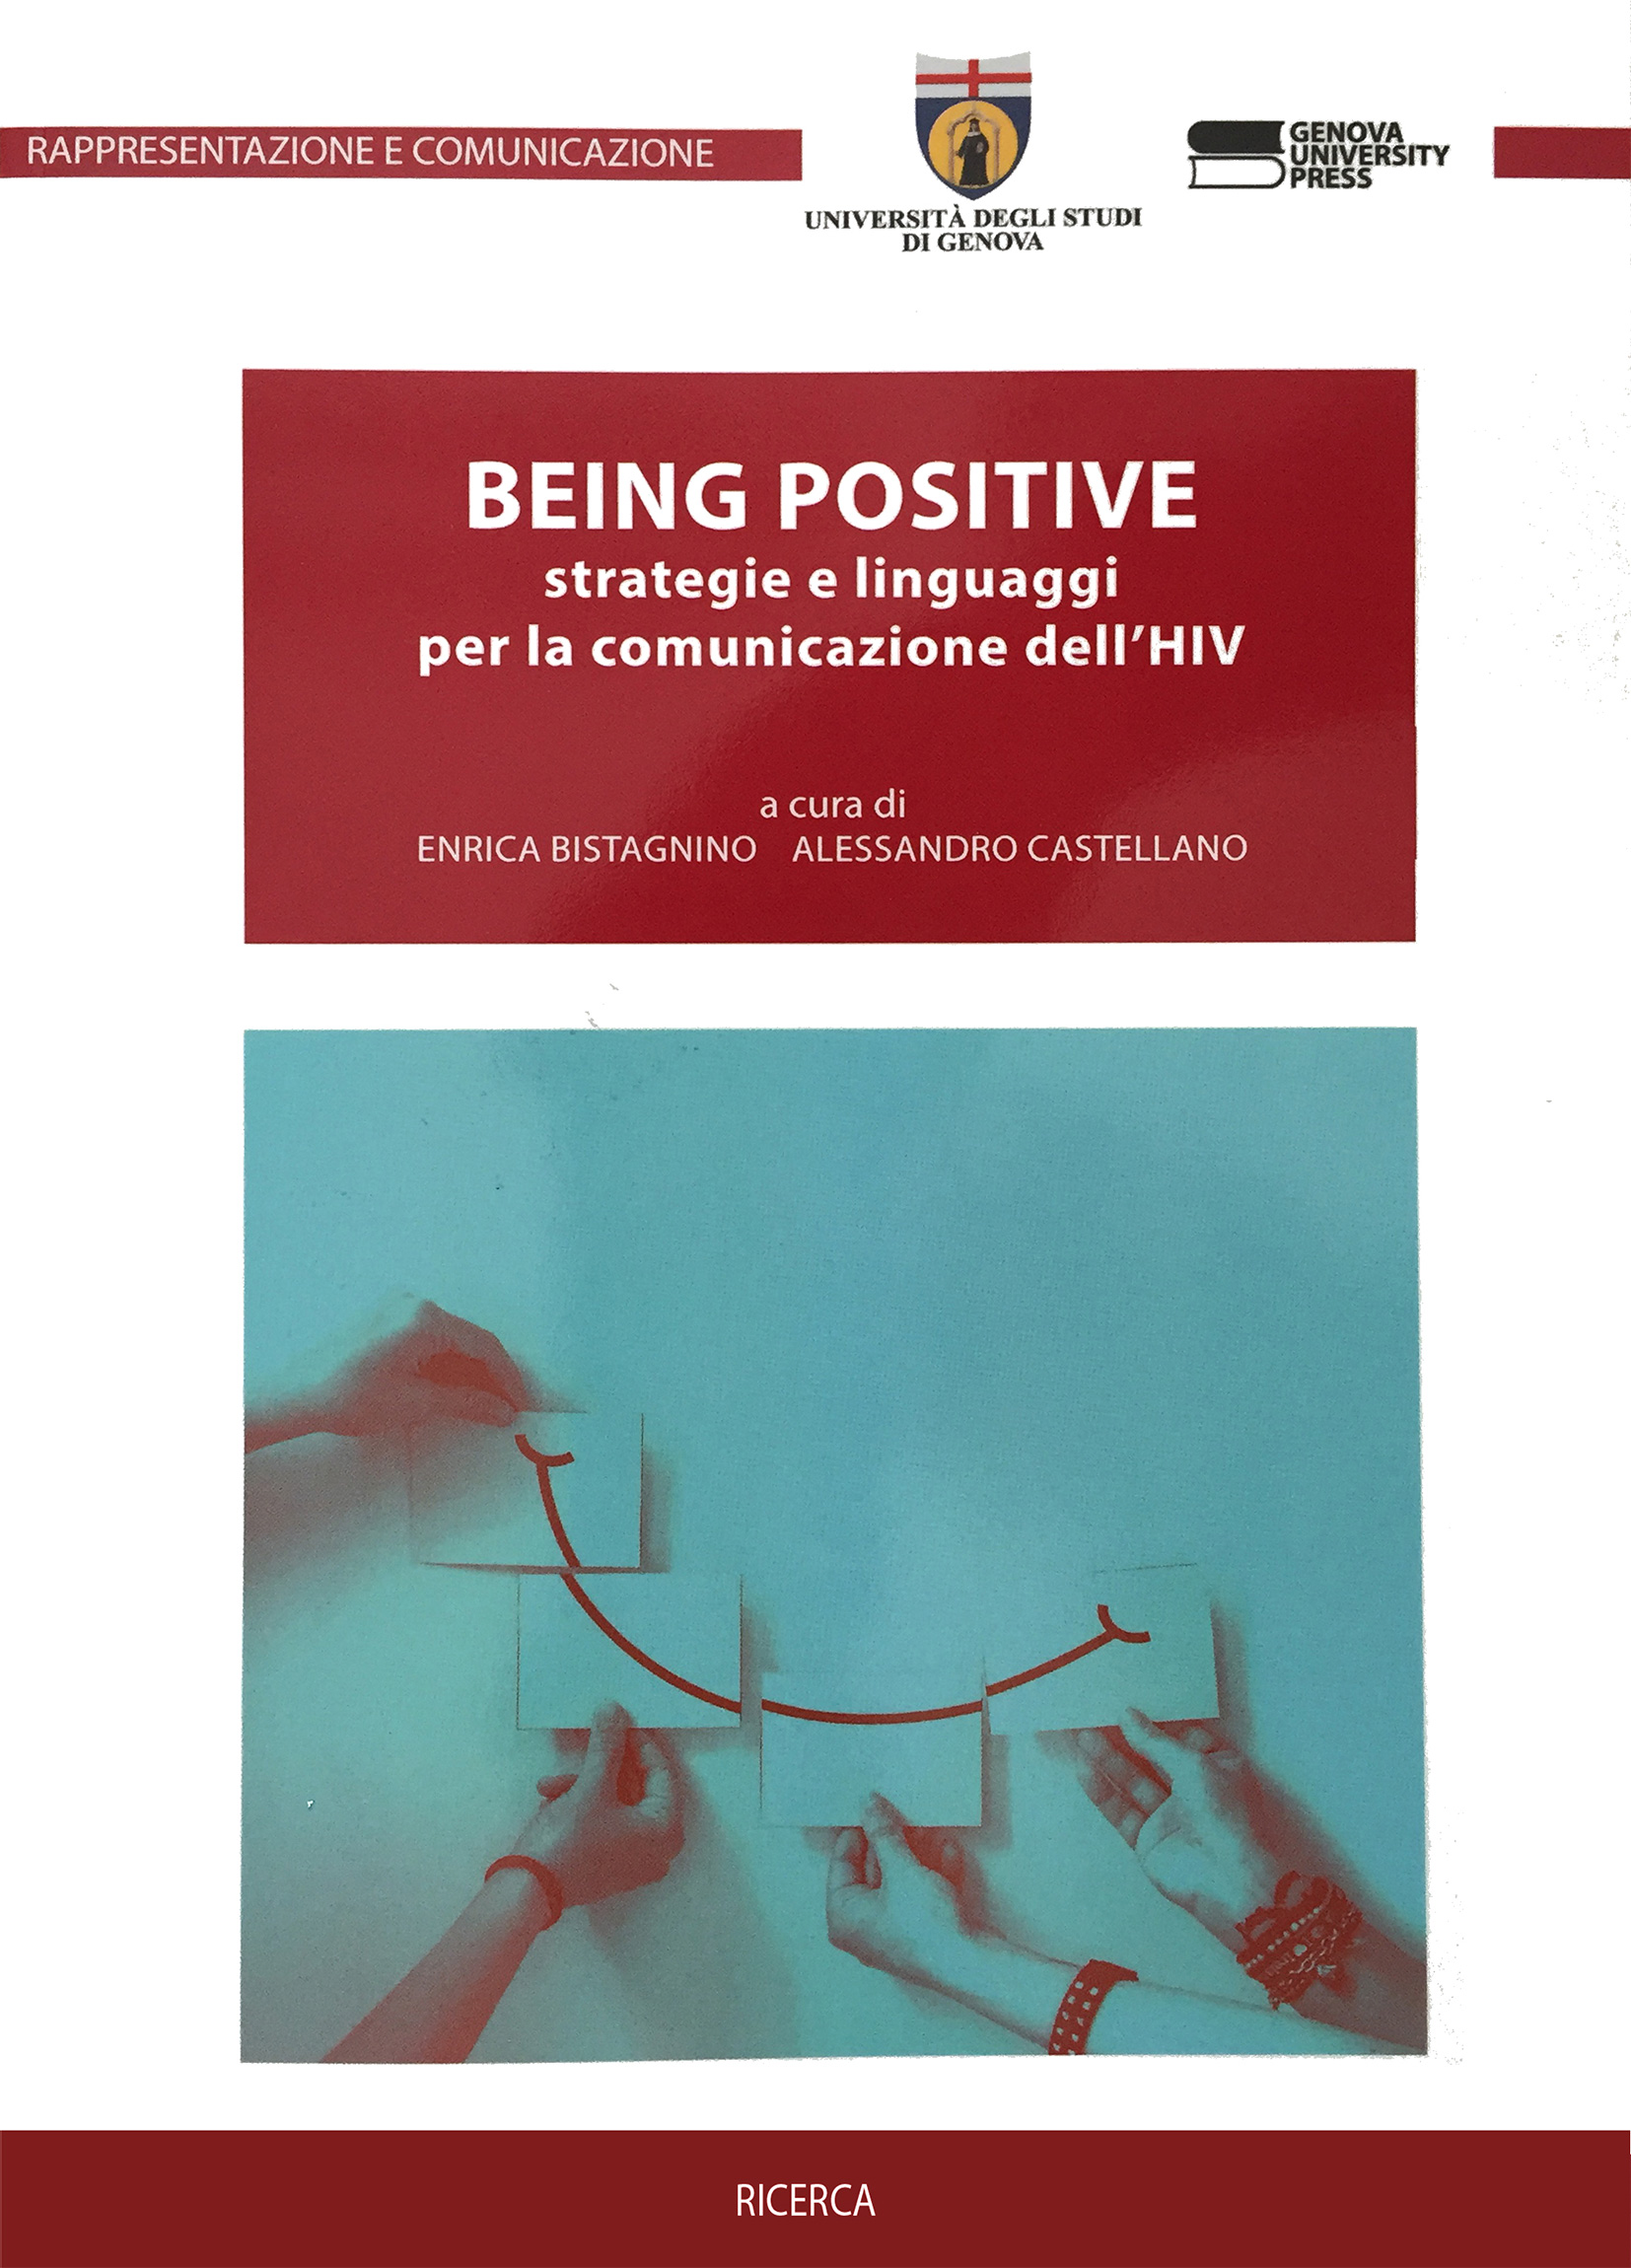 BEING POSITIVE strategie e linguaggi per la comunicazione dell'HIV